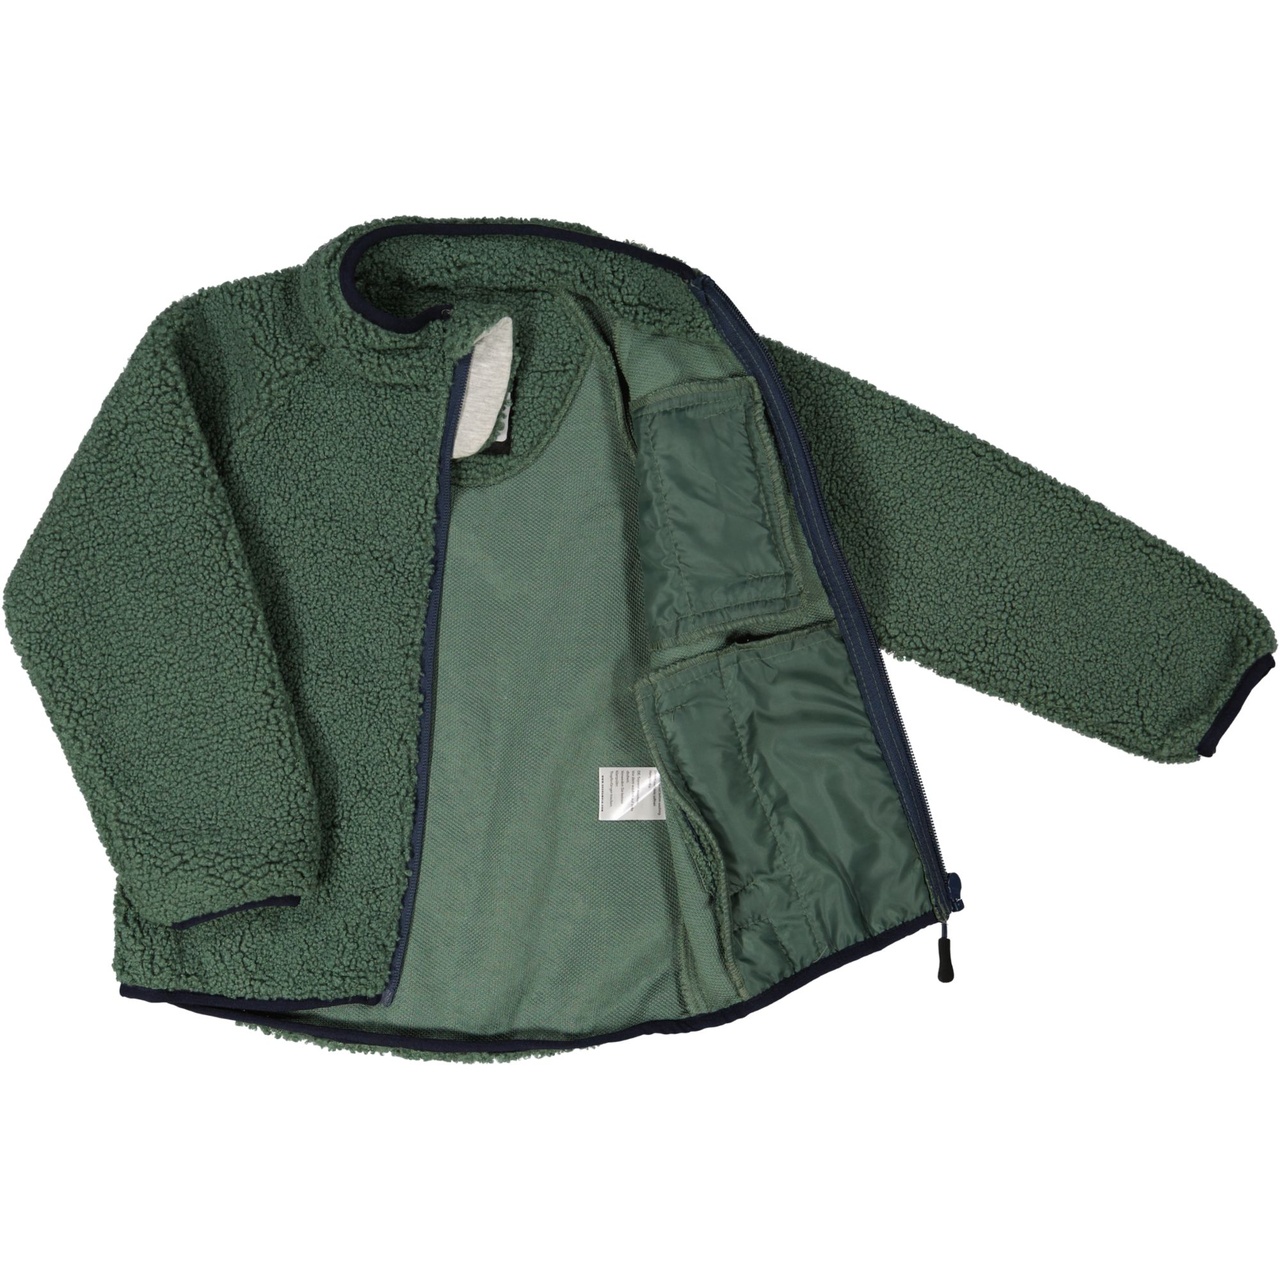 Pile jacket Moss green  134/140